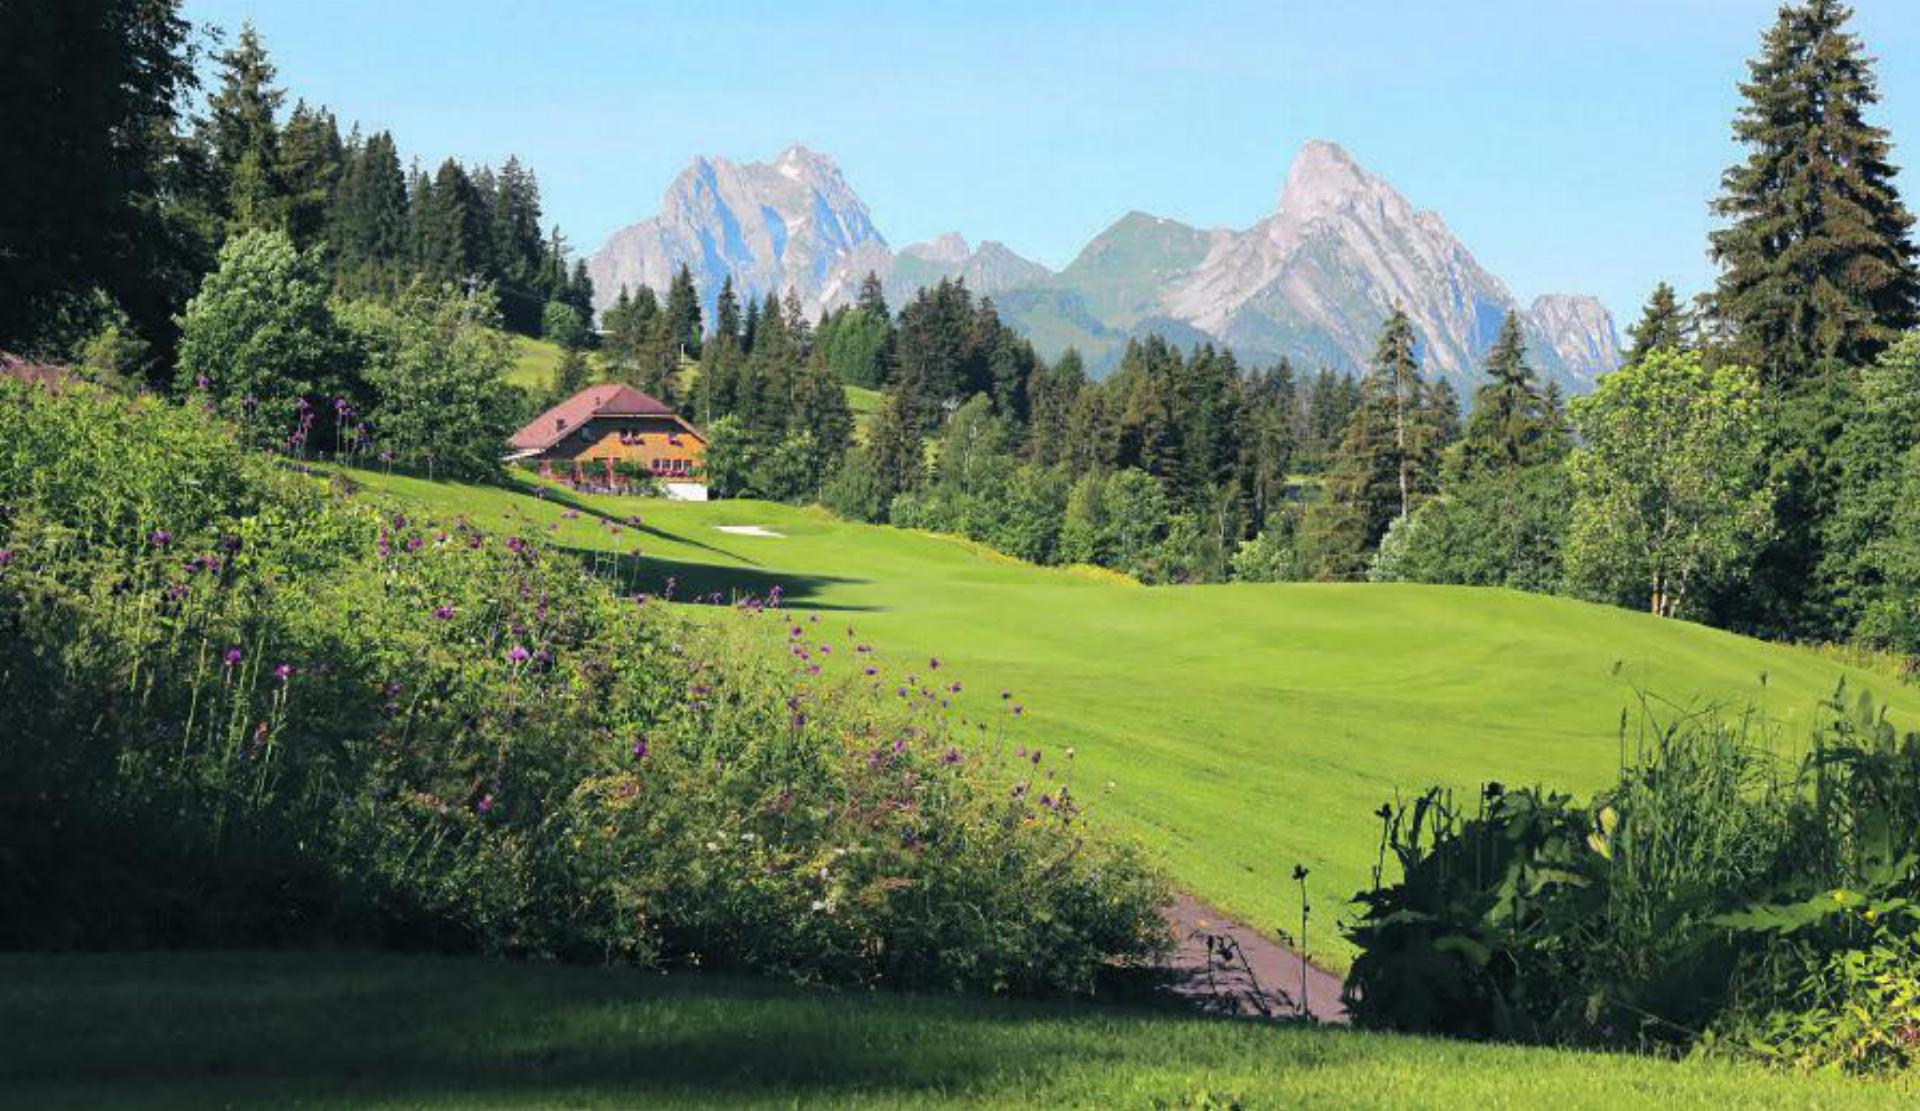 Der Golfclub Gstaad-Saanenland bietet Schnupperkurse an. FOTO: ZVG